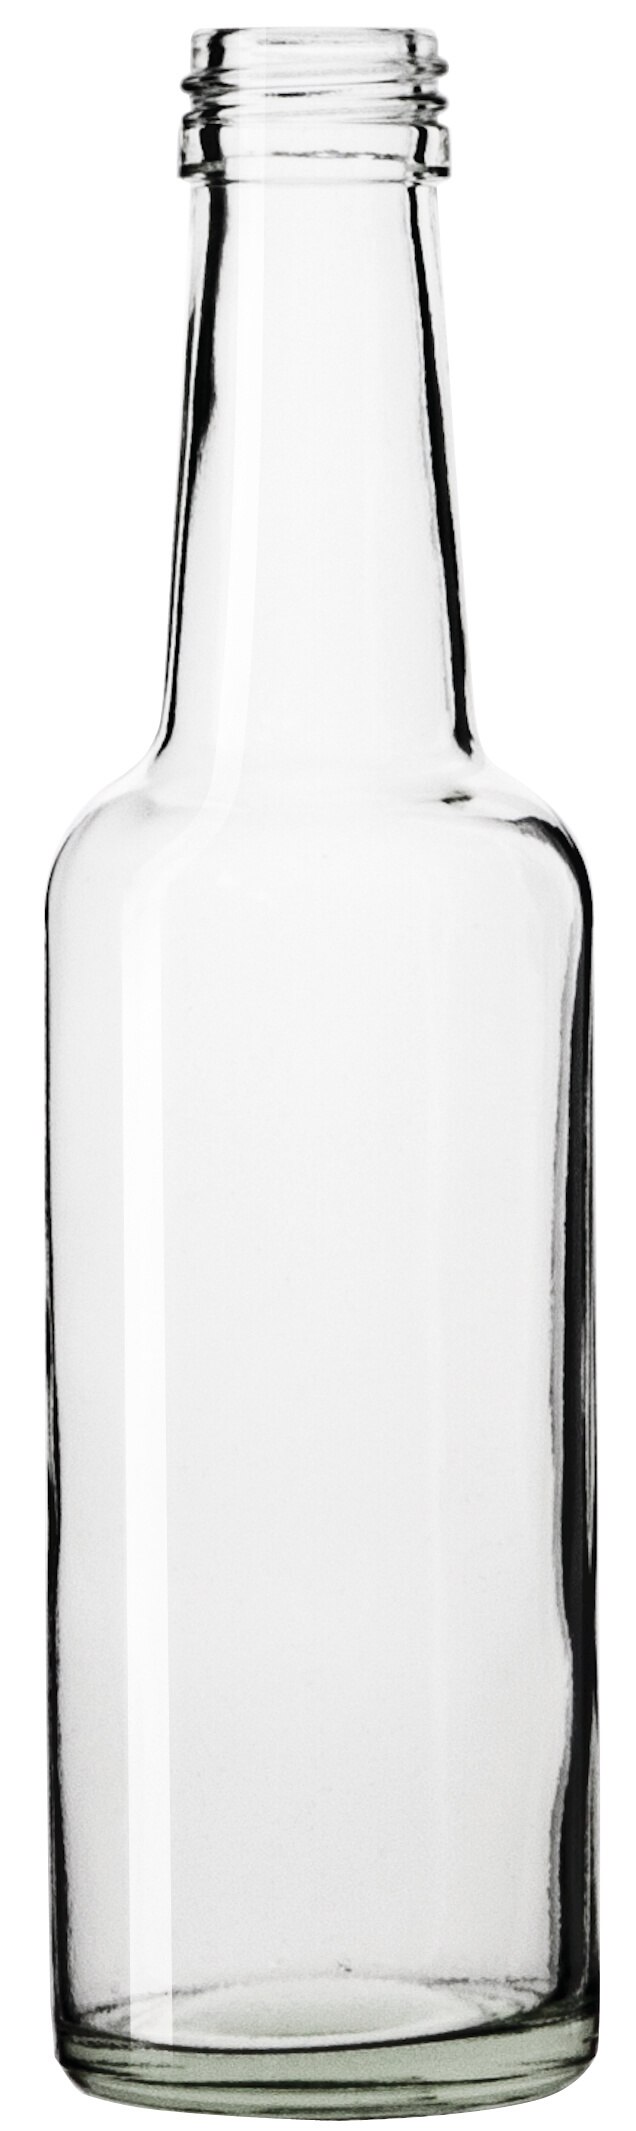 Glass bottle, clear - 250ml